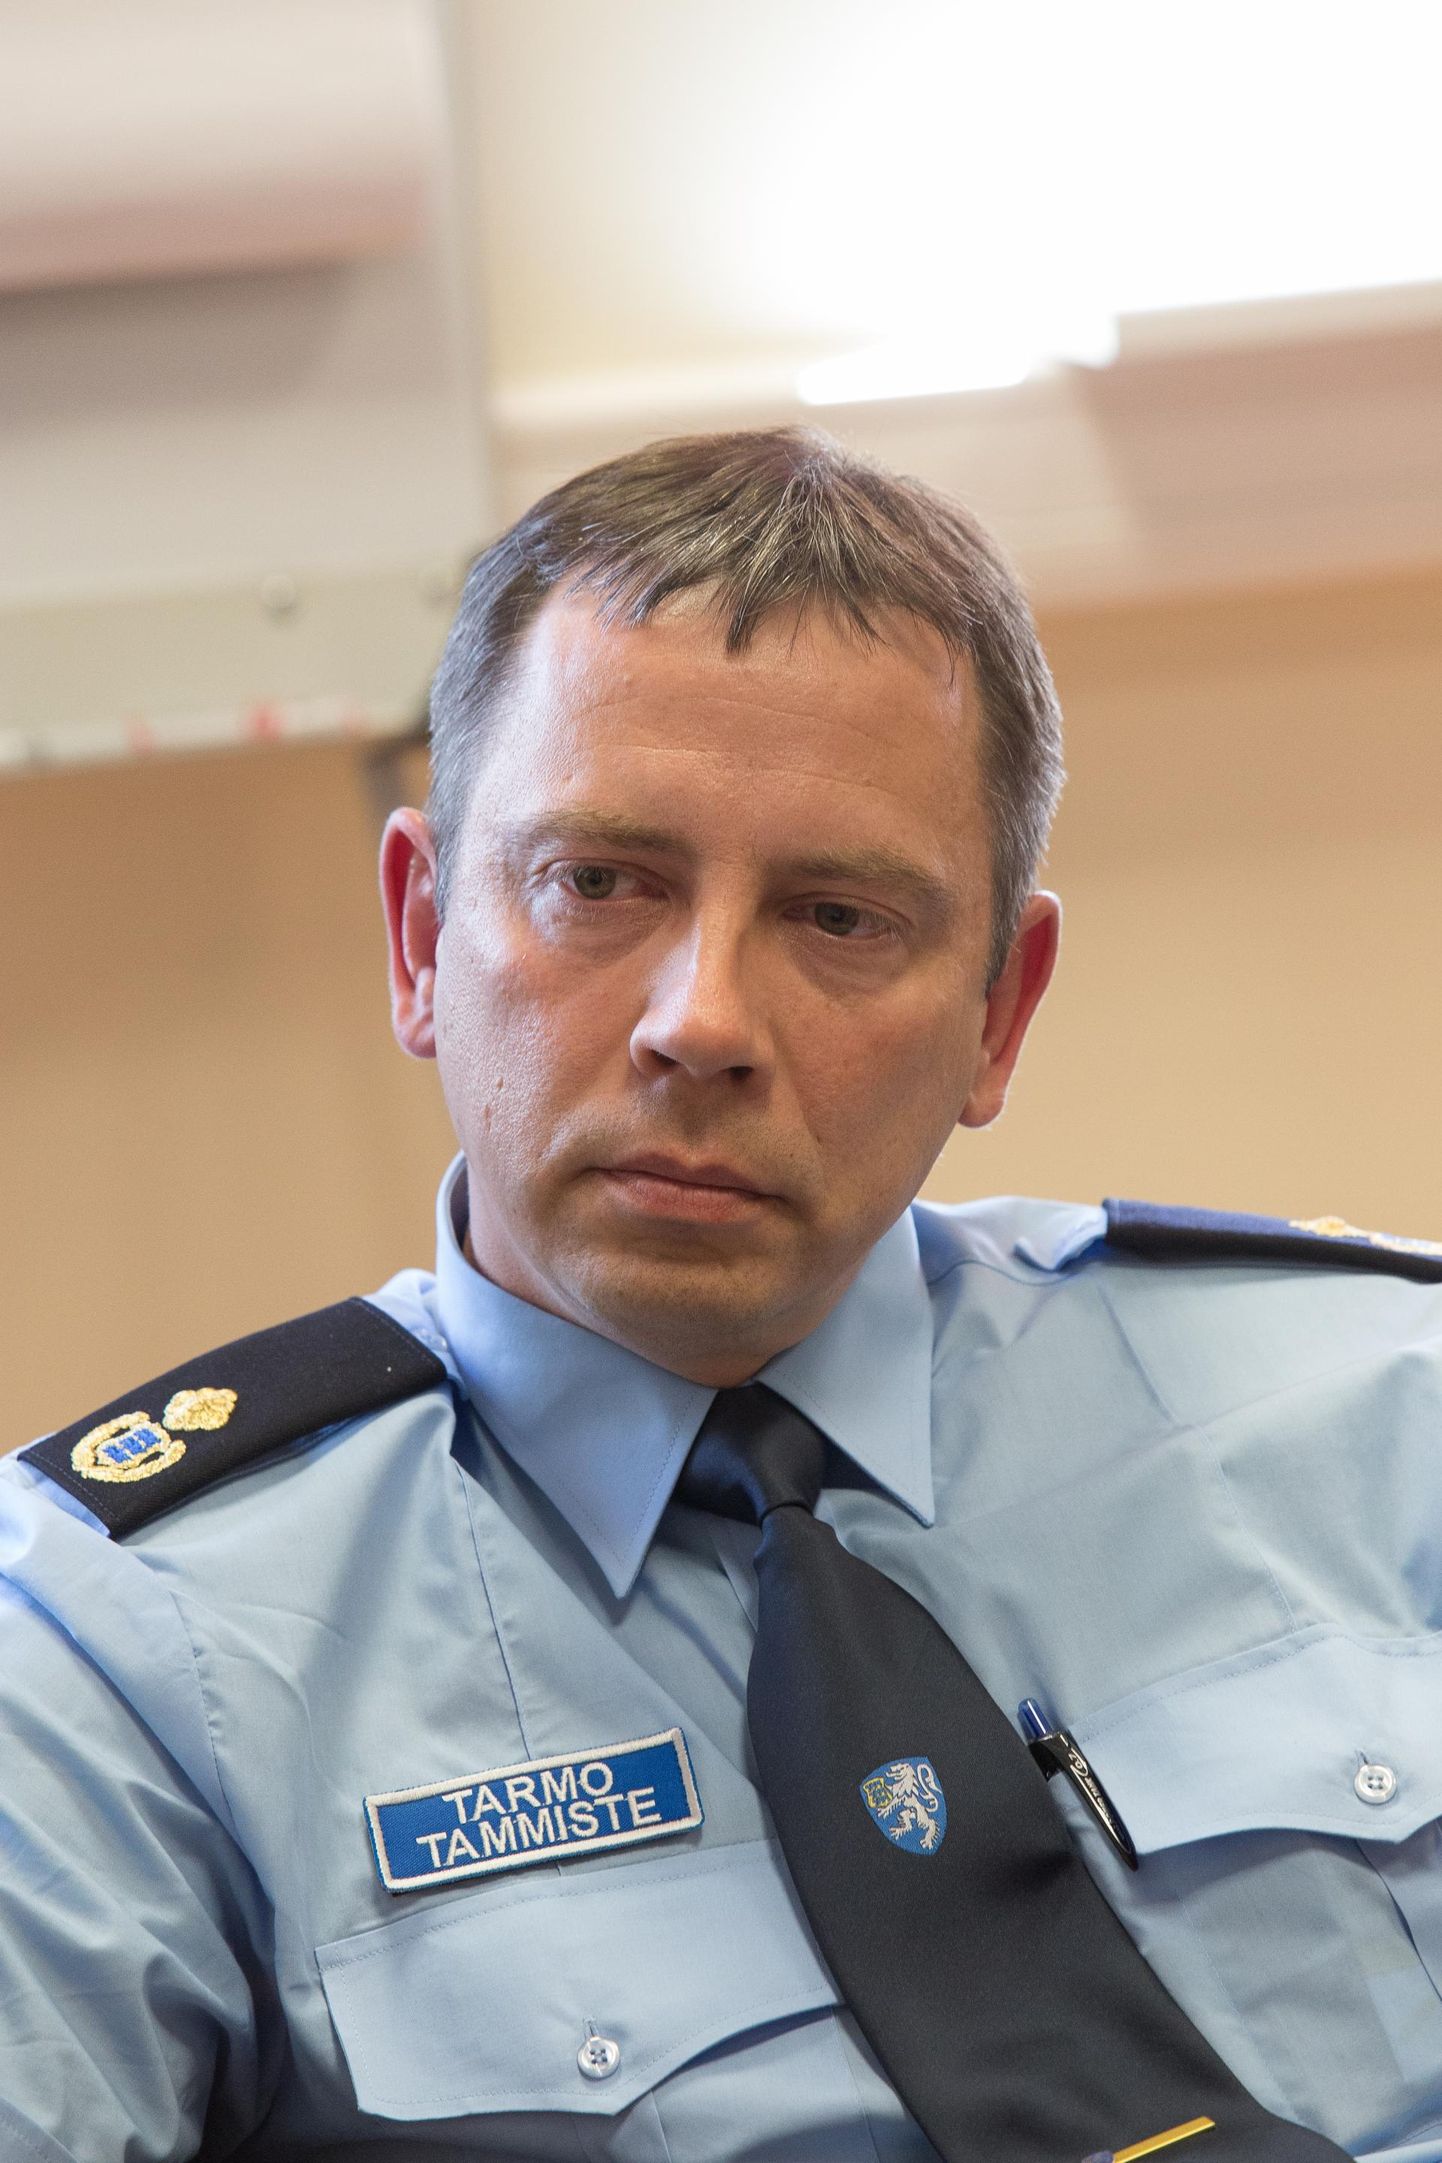 Rakvere politseijaoskonna uue juhi Tarmo Tammiste sõnul on politsei pidevas muutumises nagu ühiskondki.